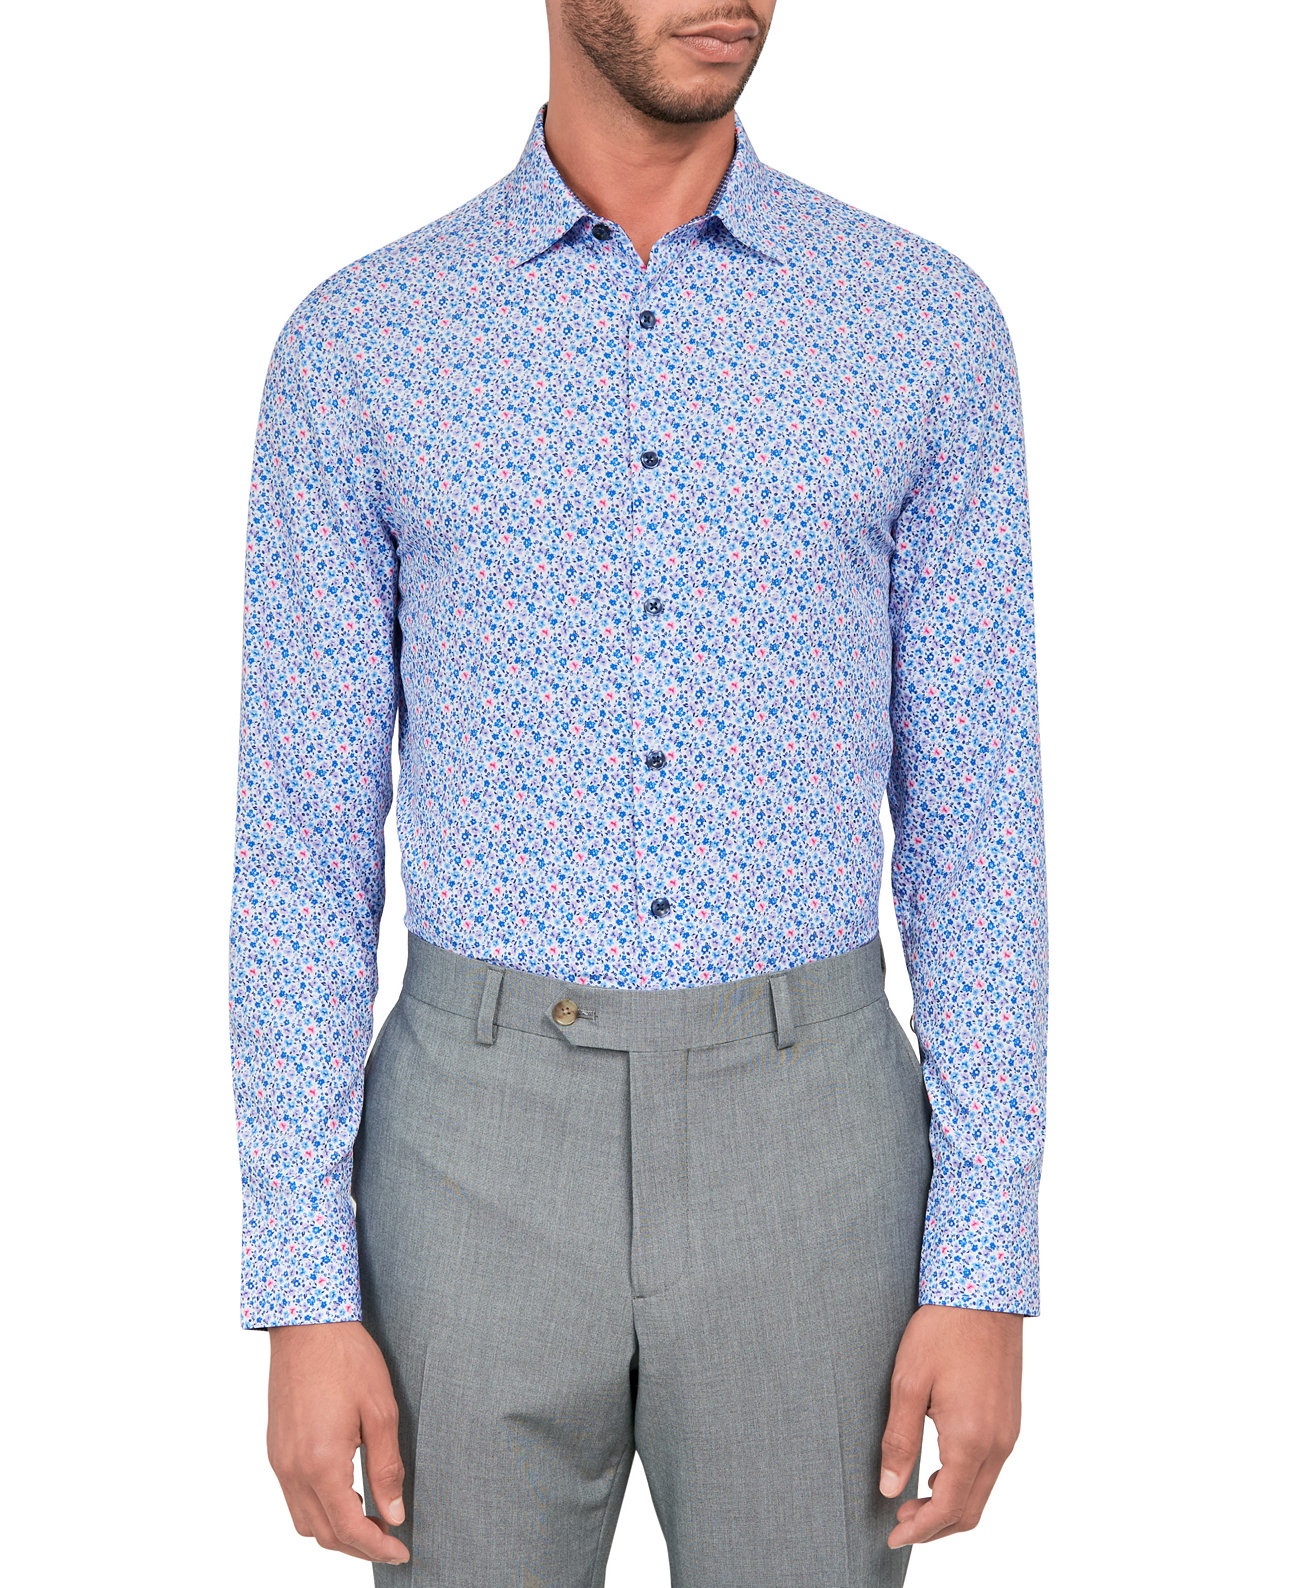 Мужская приталенная классическая рубашка с цветочным принтом и эластичным охлаждением CONSTRUCT